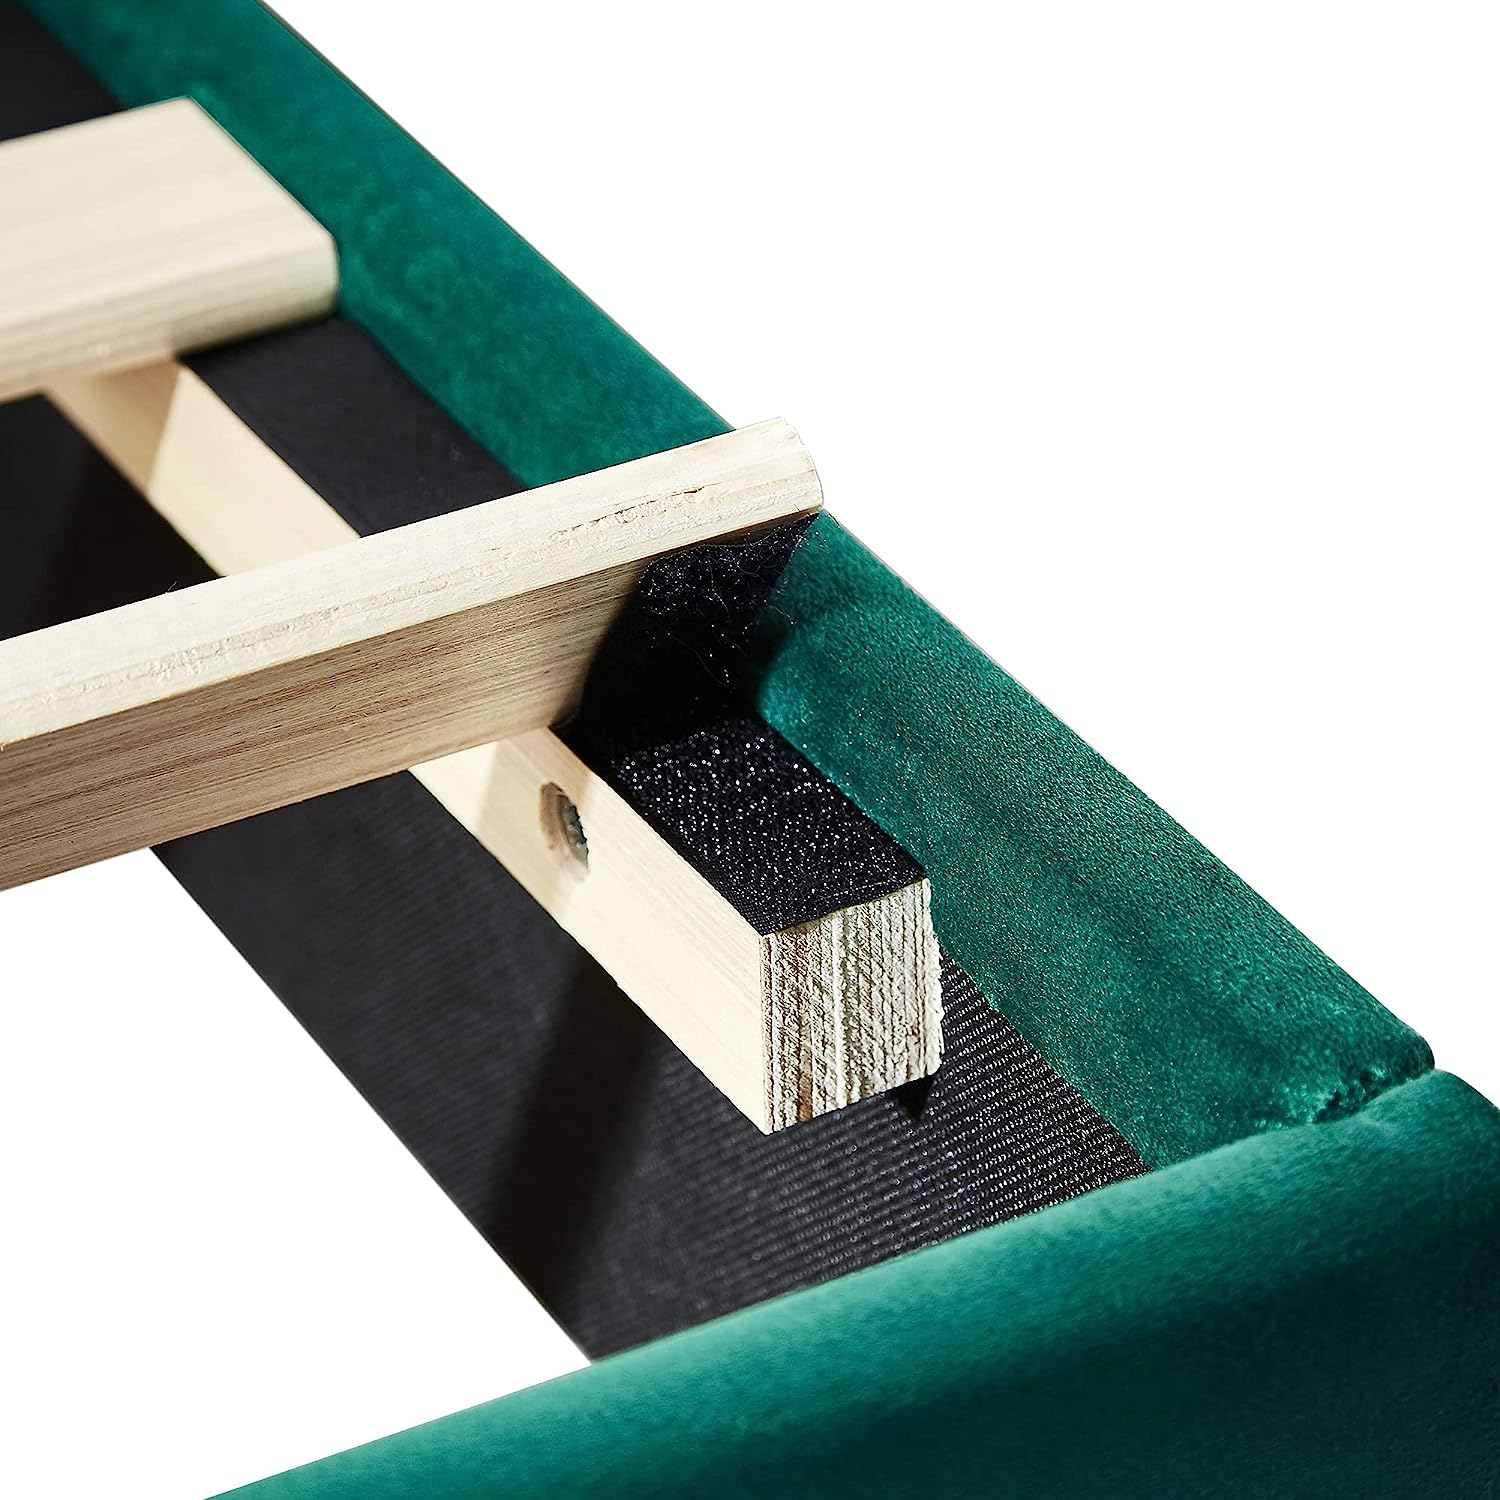 VECELO Upholstered Platform bedframe with Adjustable Headboard